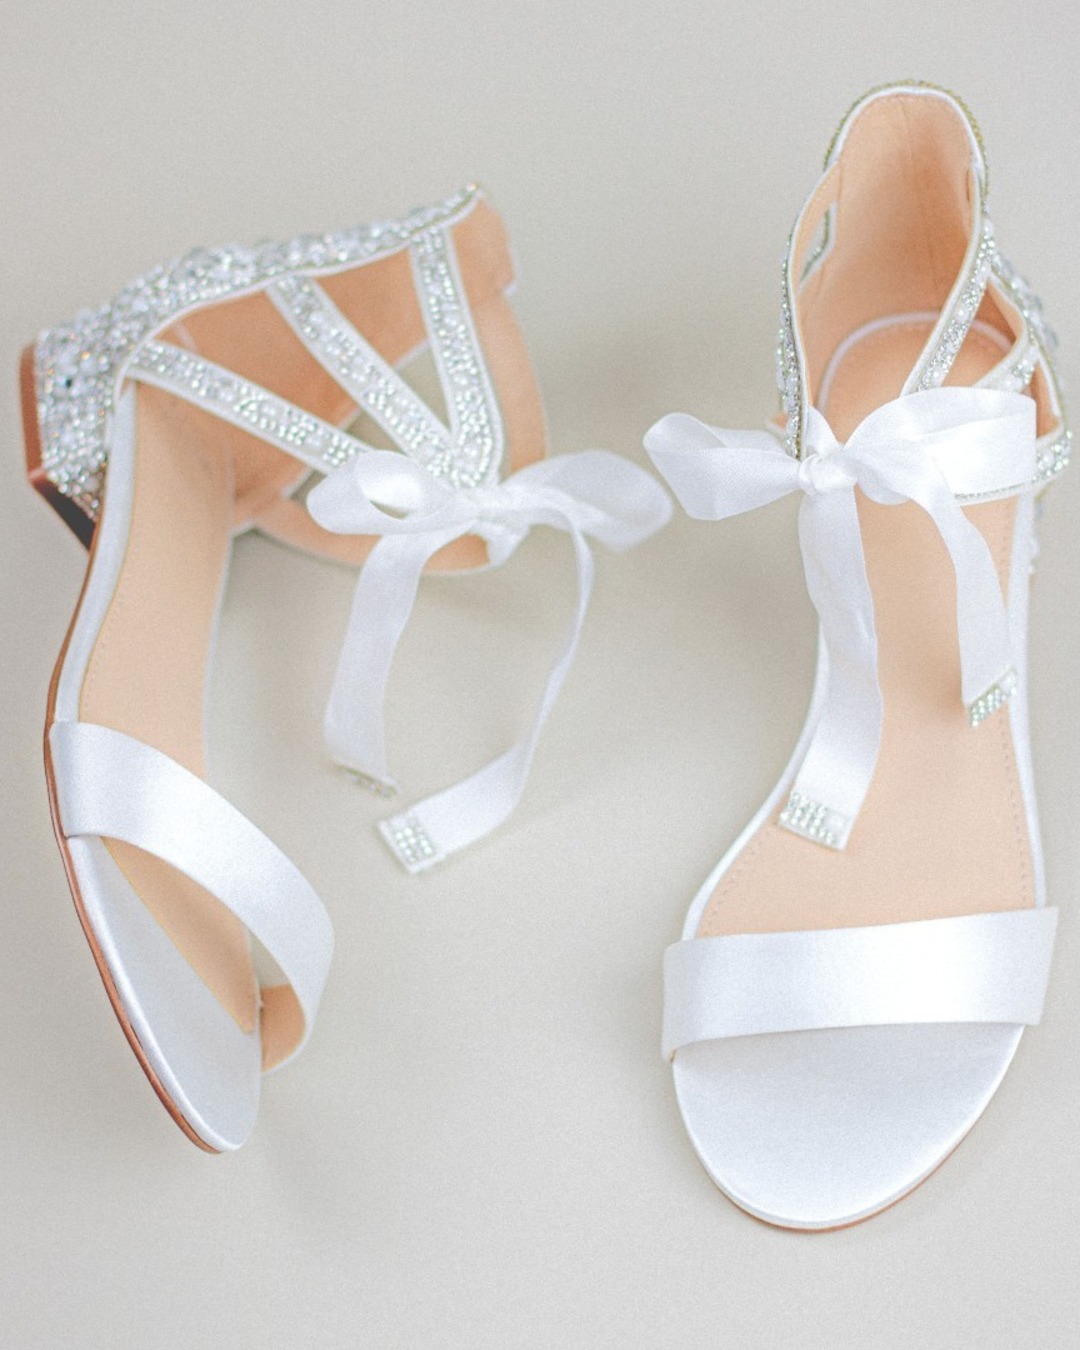 white wedding sandals sparkly